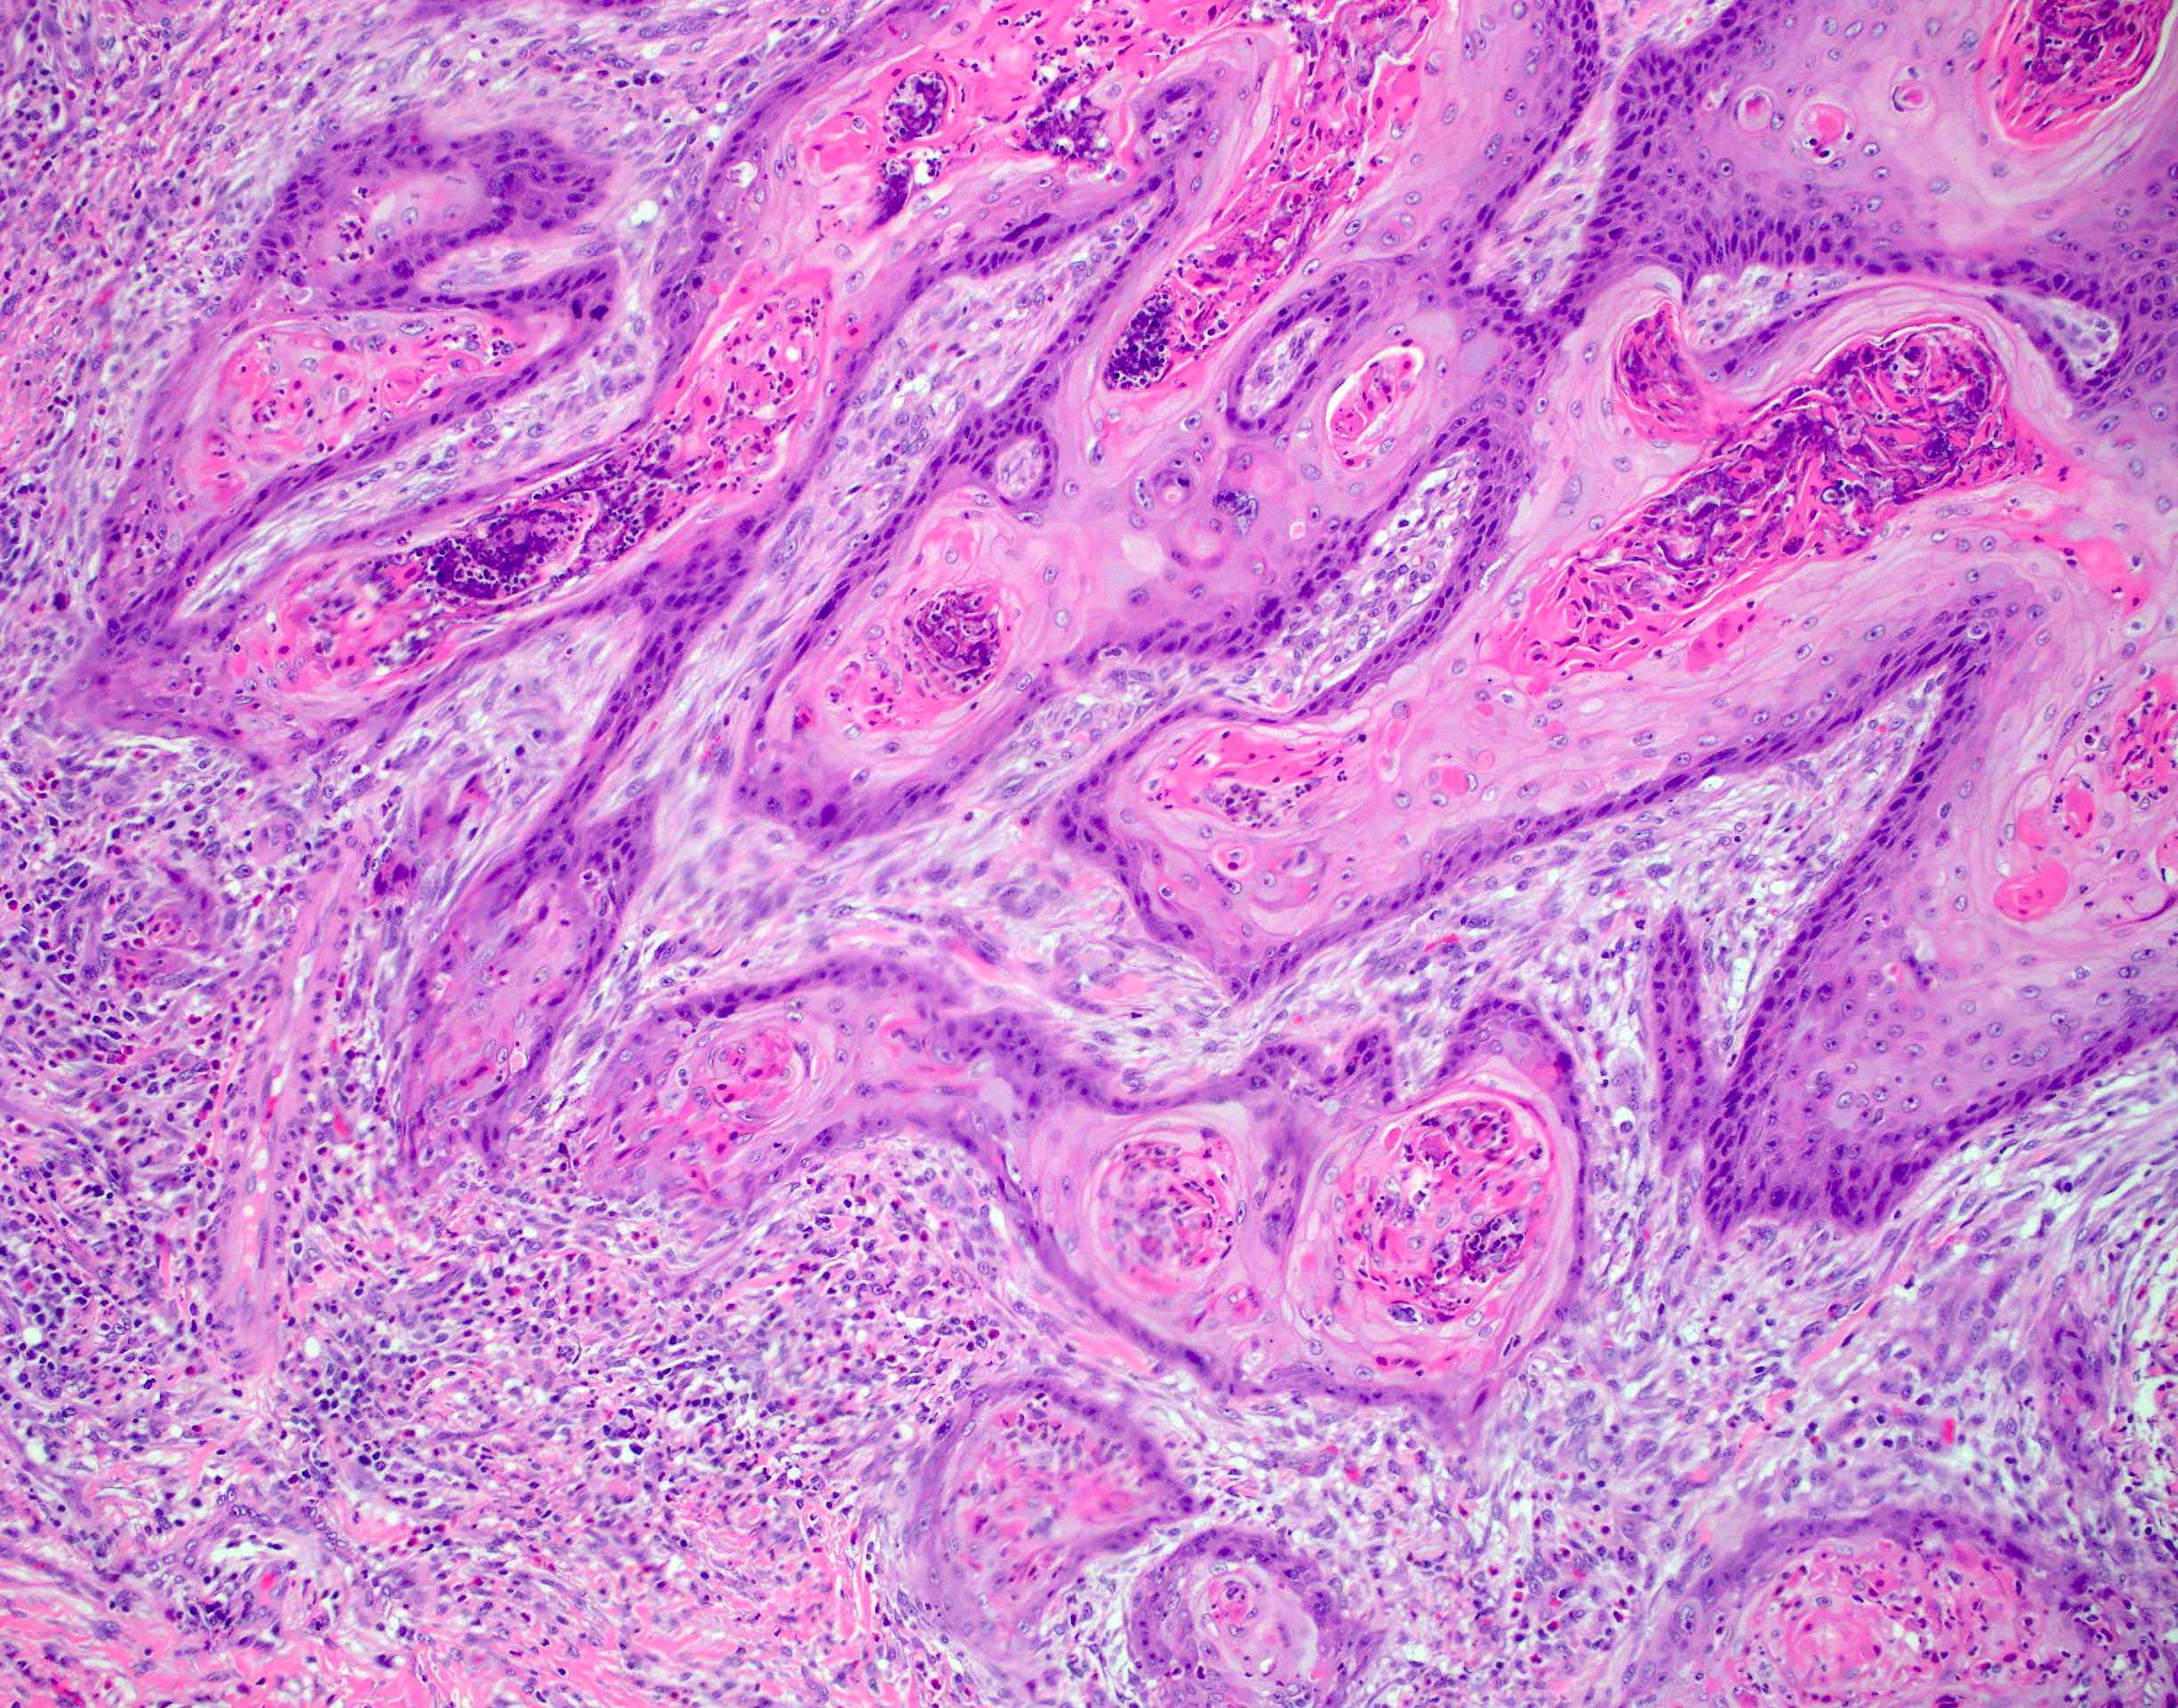 Invasive squamous cell carcinoma arising in condyloma